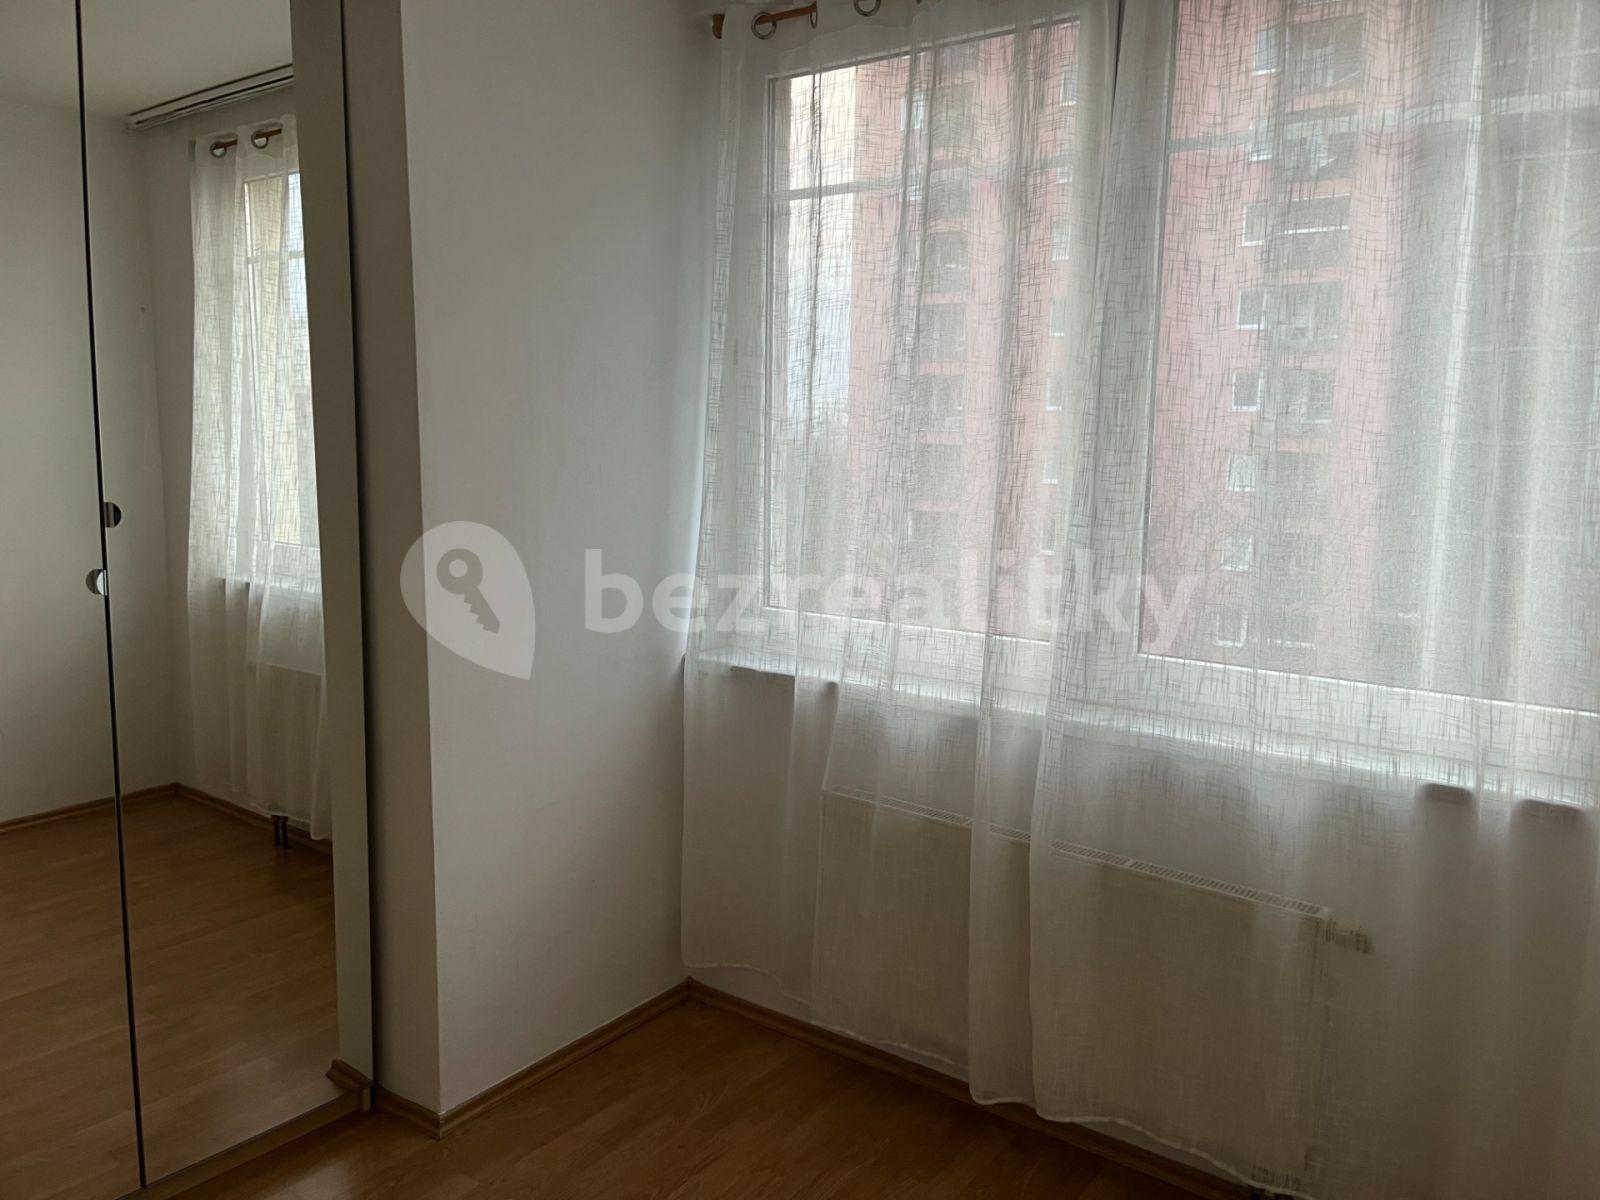 1 bedroom with open-plan kitchen flat to rent, 47 m², Hnězdenská, Prague, Prague